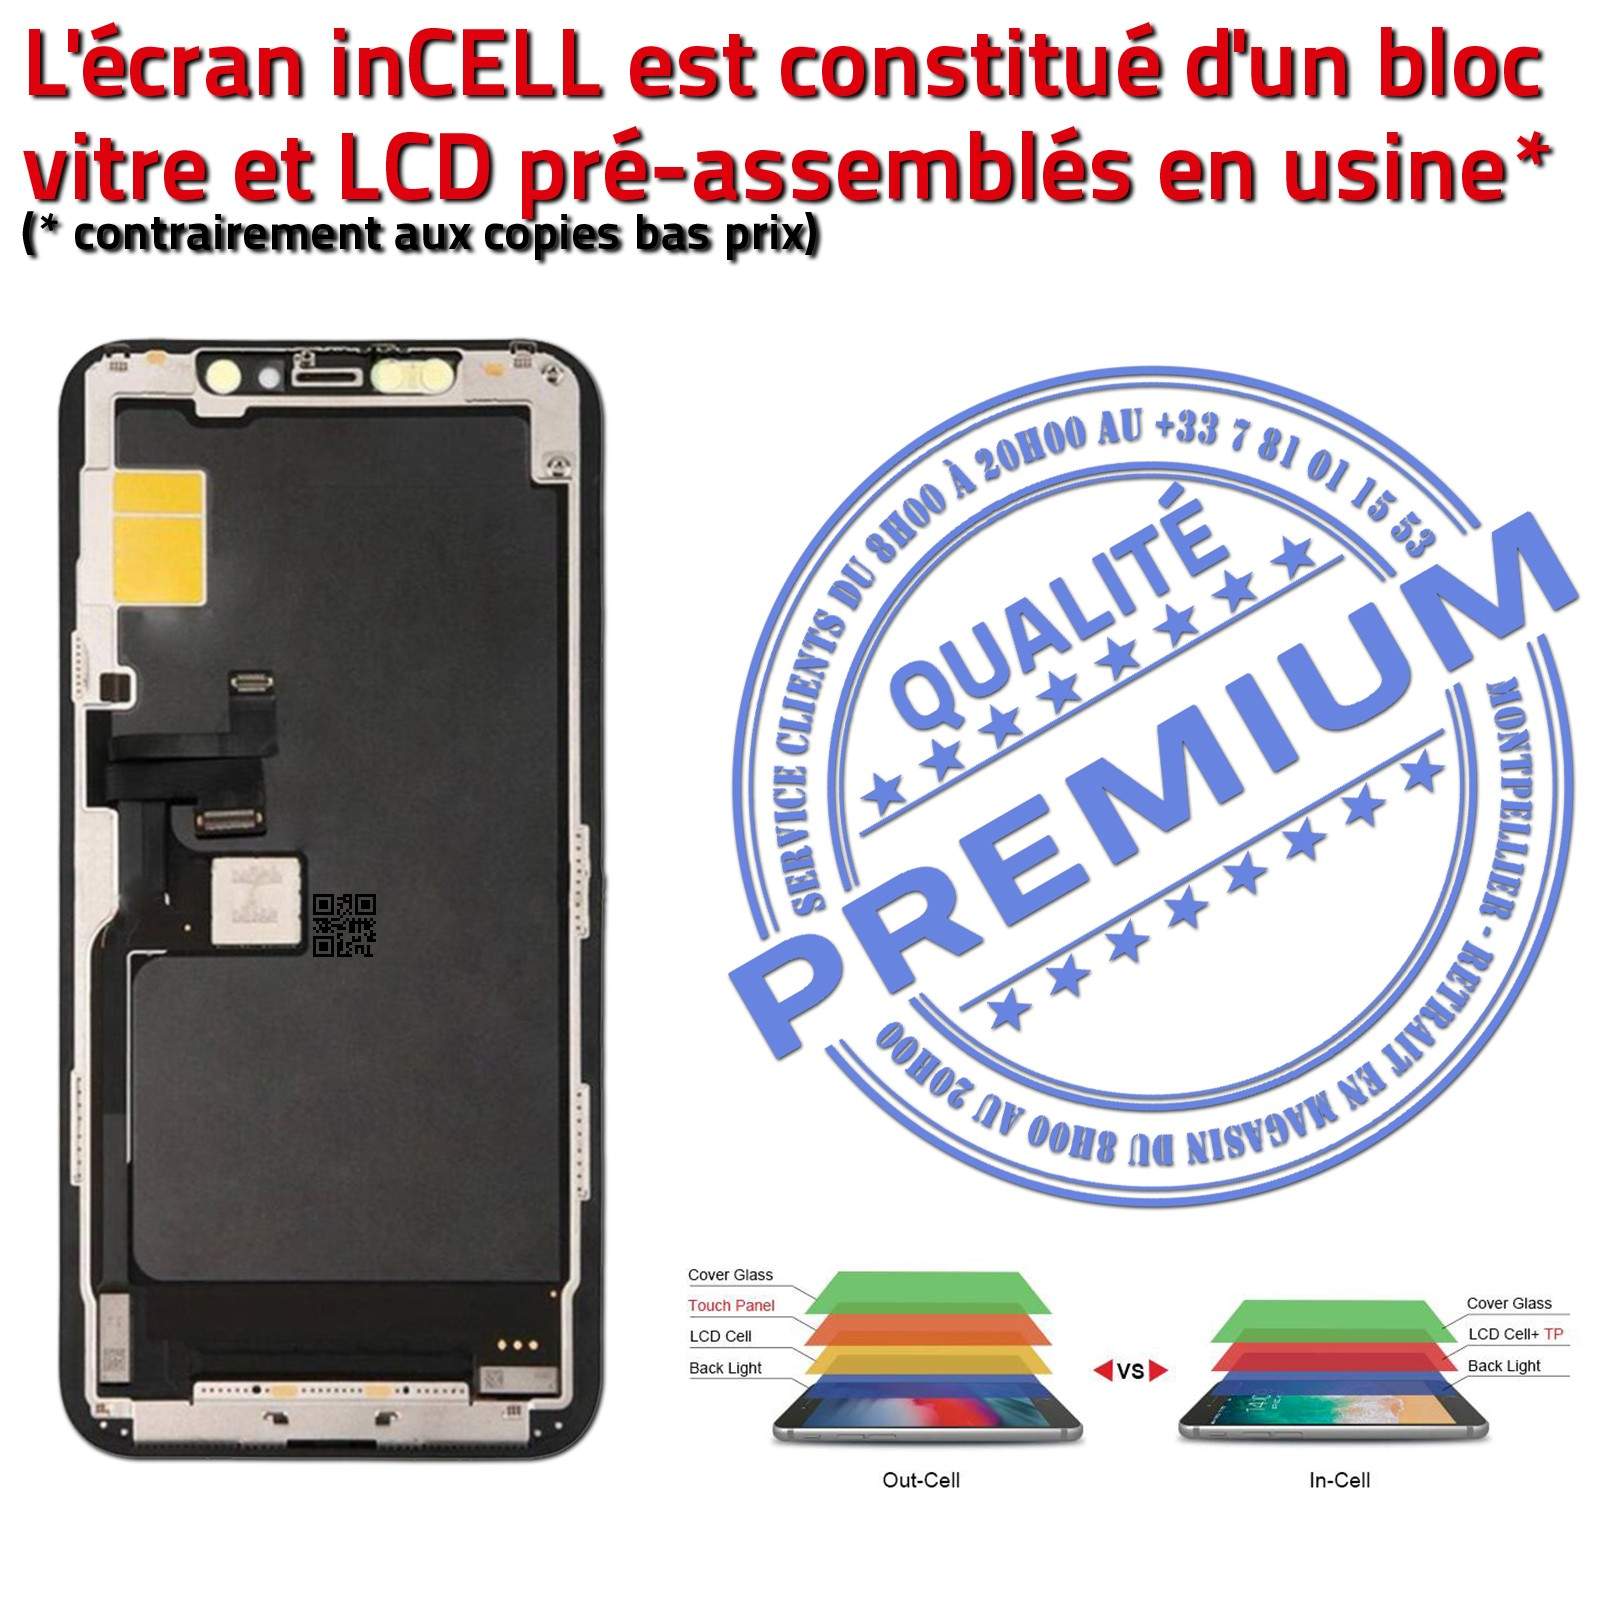 Verre Tactile iPhone A2220 inCELL Qualité Écran PREMIUM Réparation SmartPhone Affichage True Tone LCD Super Retina 6,5 in